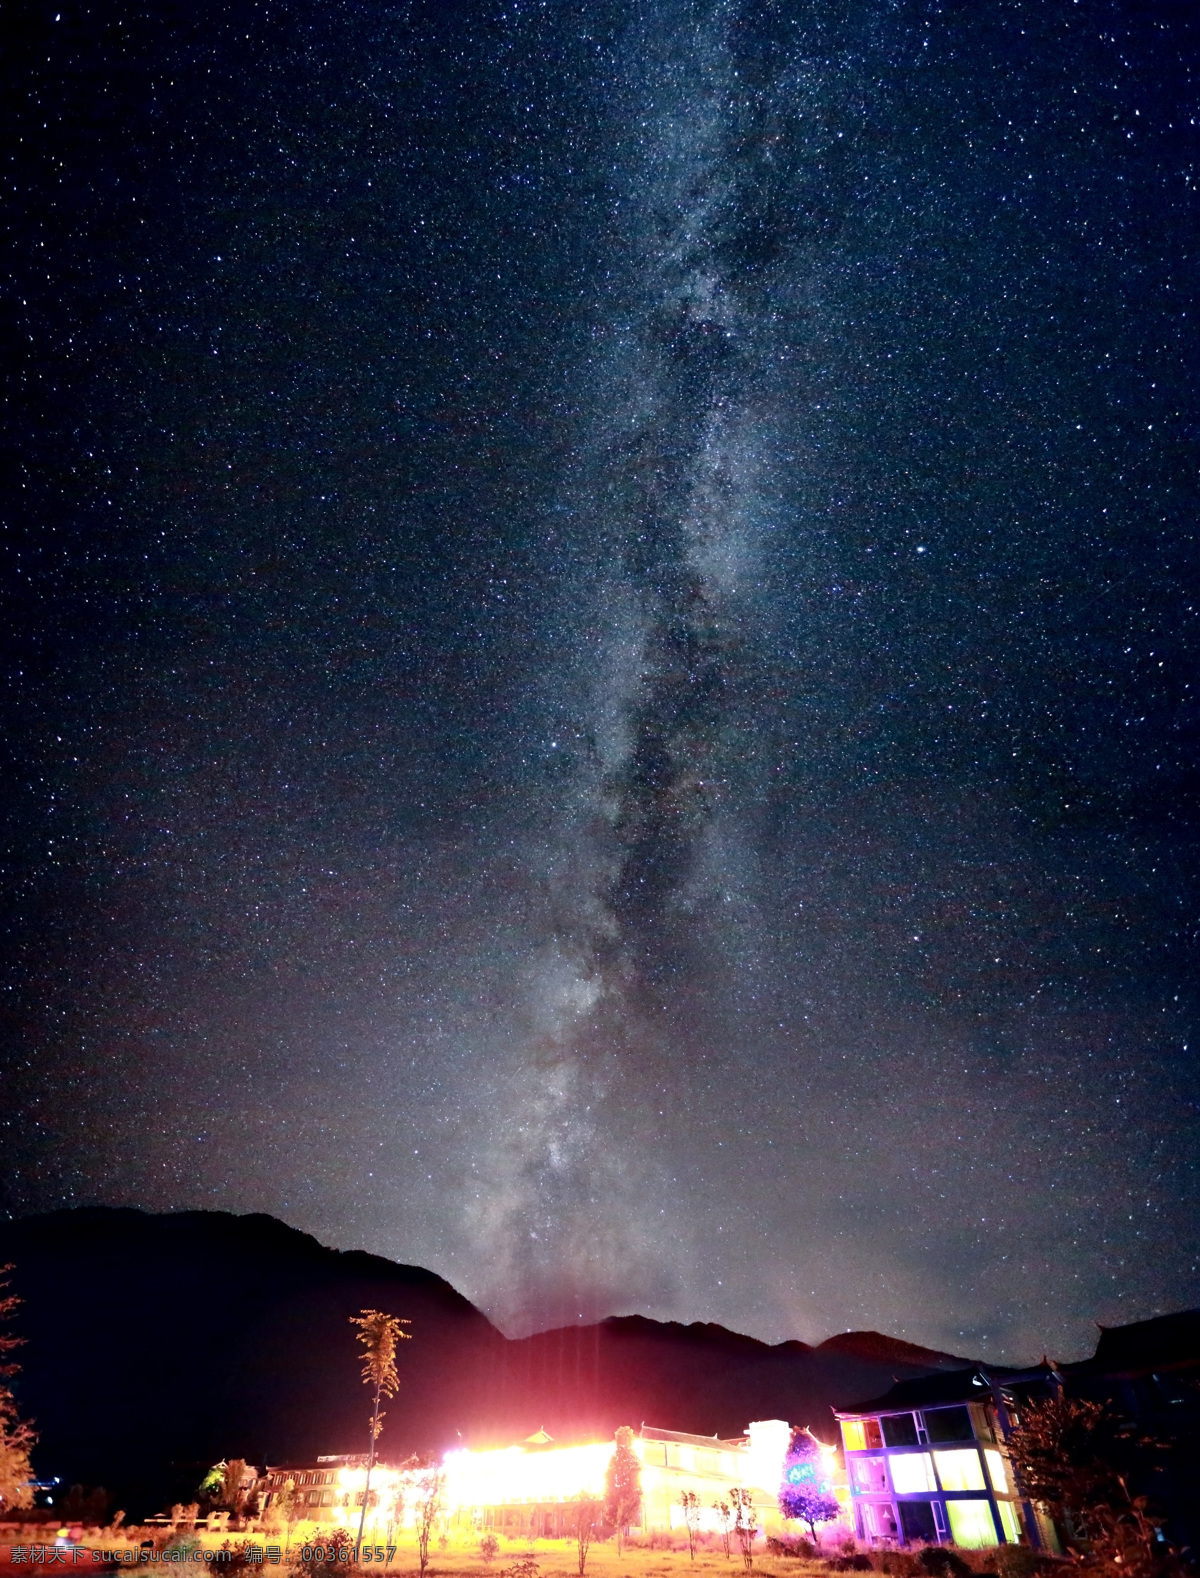 银河 升起 地方 泸沽湖 夜空 云南 四川 自然景观 山水风景